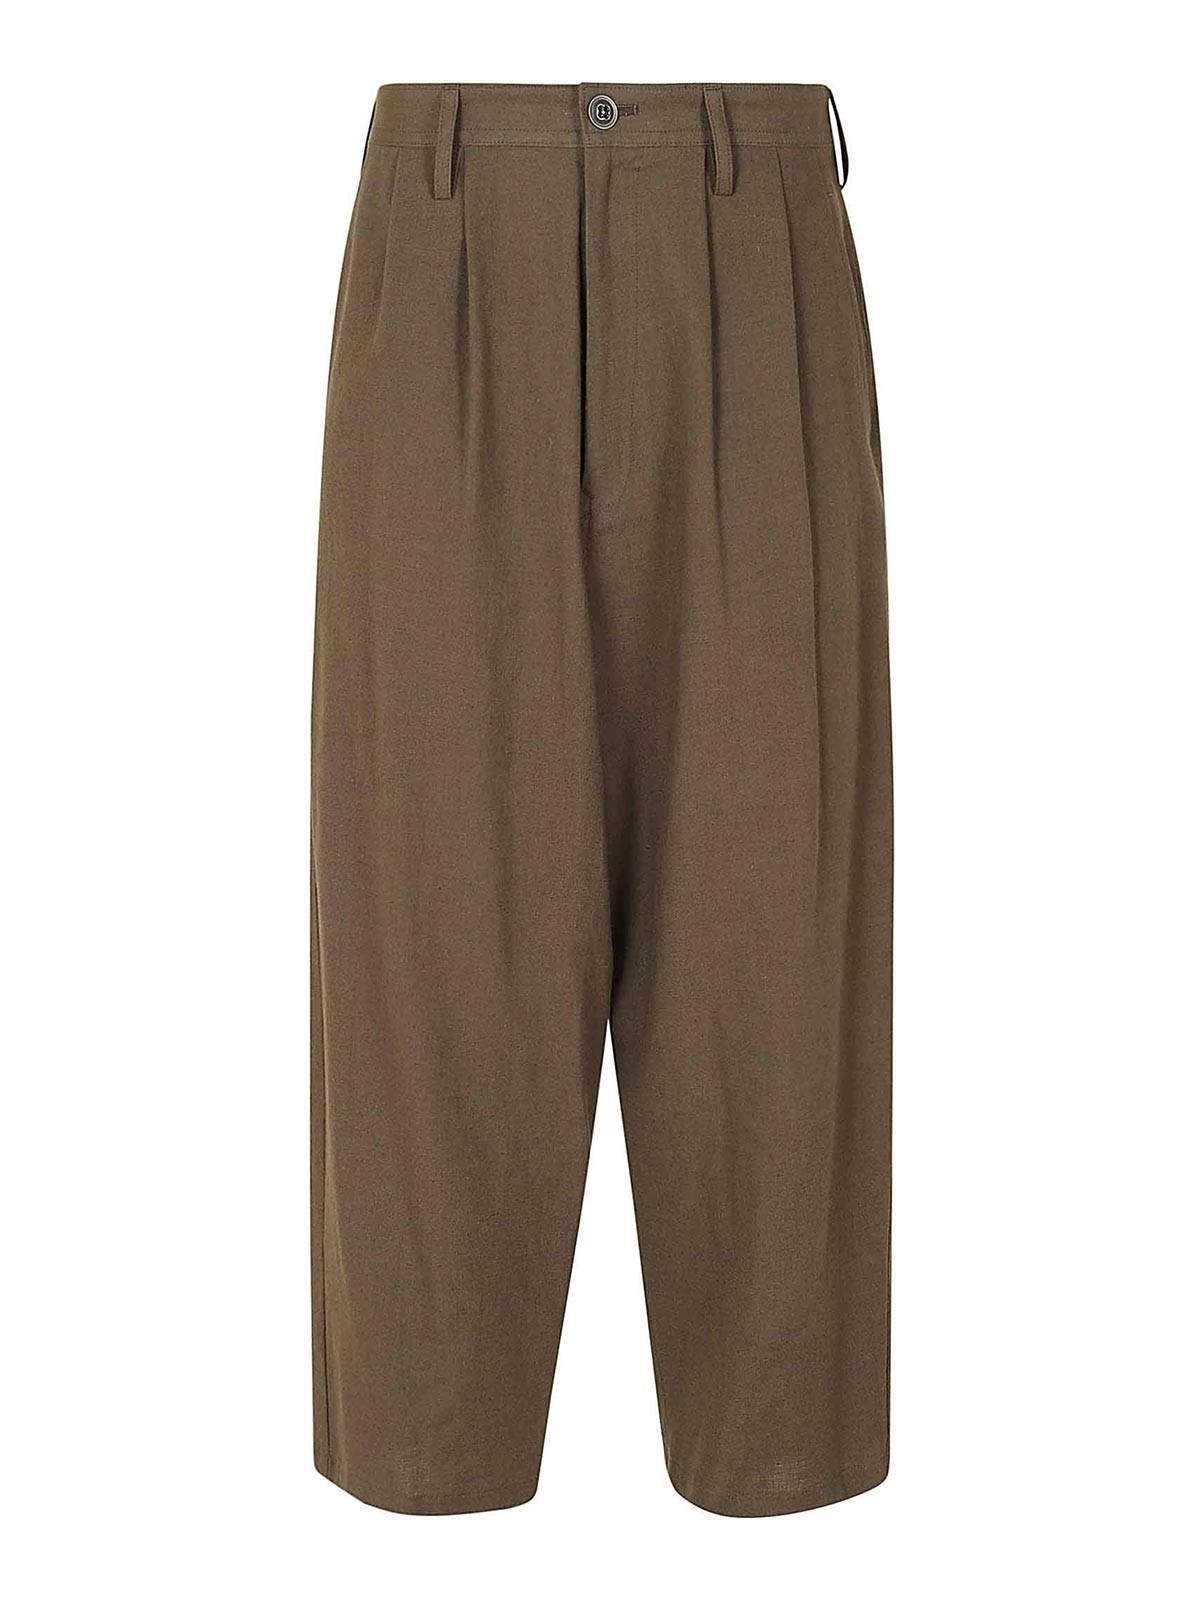 Yohji Yamamoto Casual Trousers In Light Brown